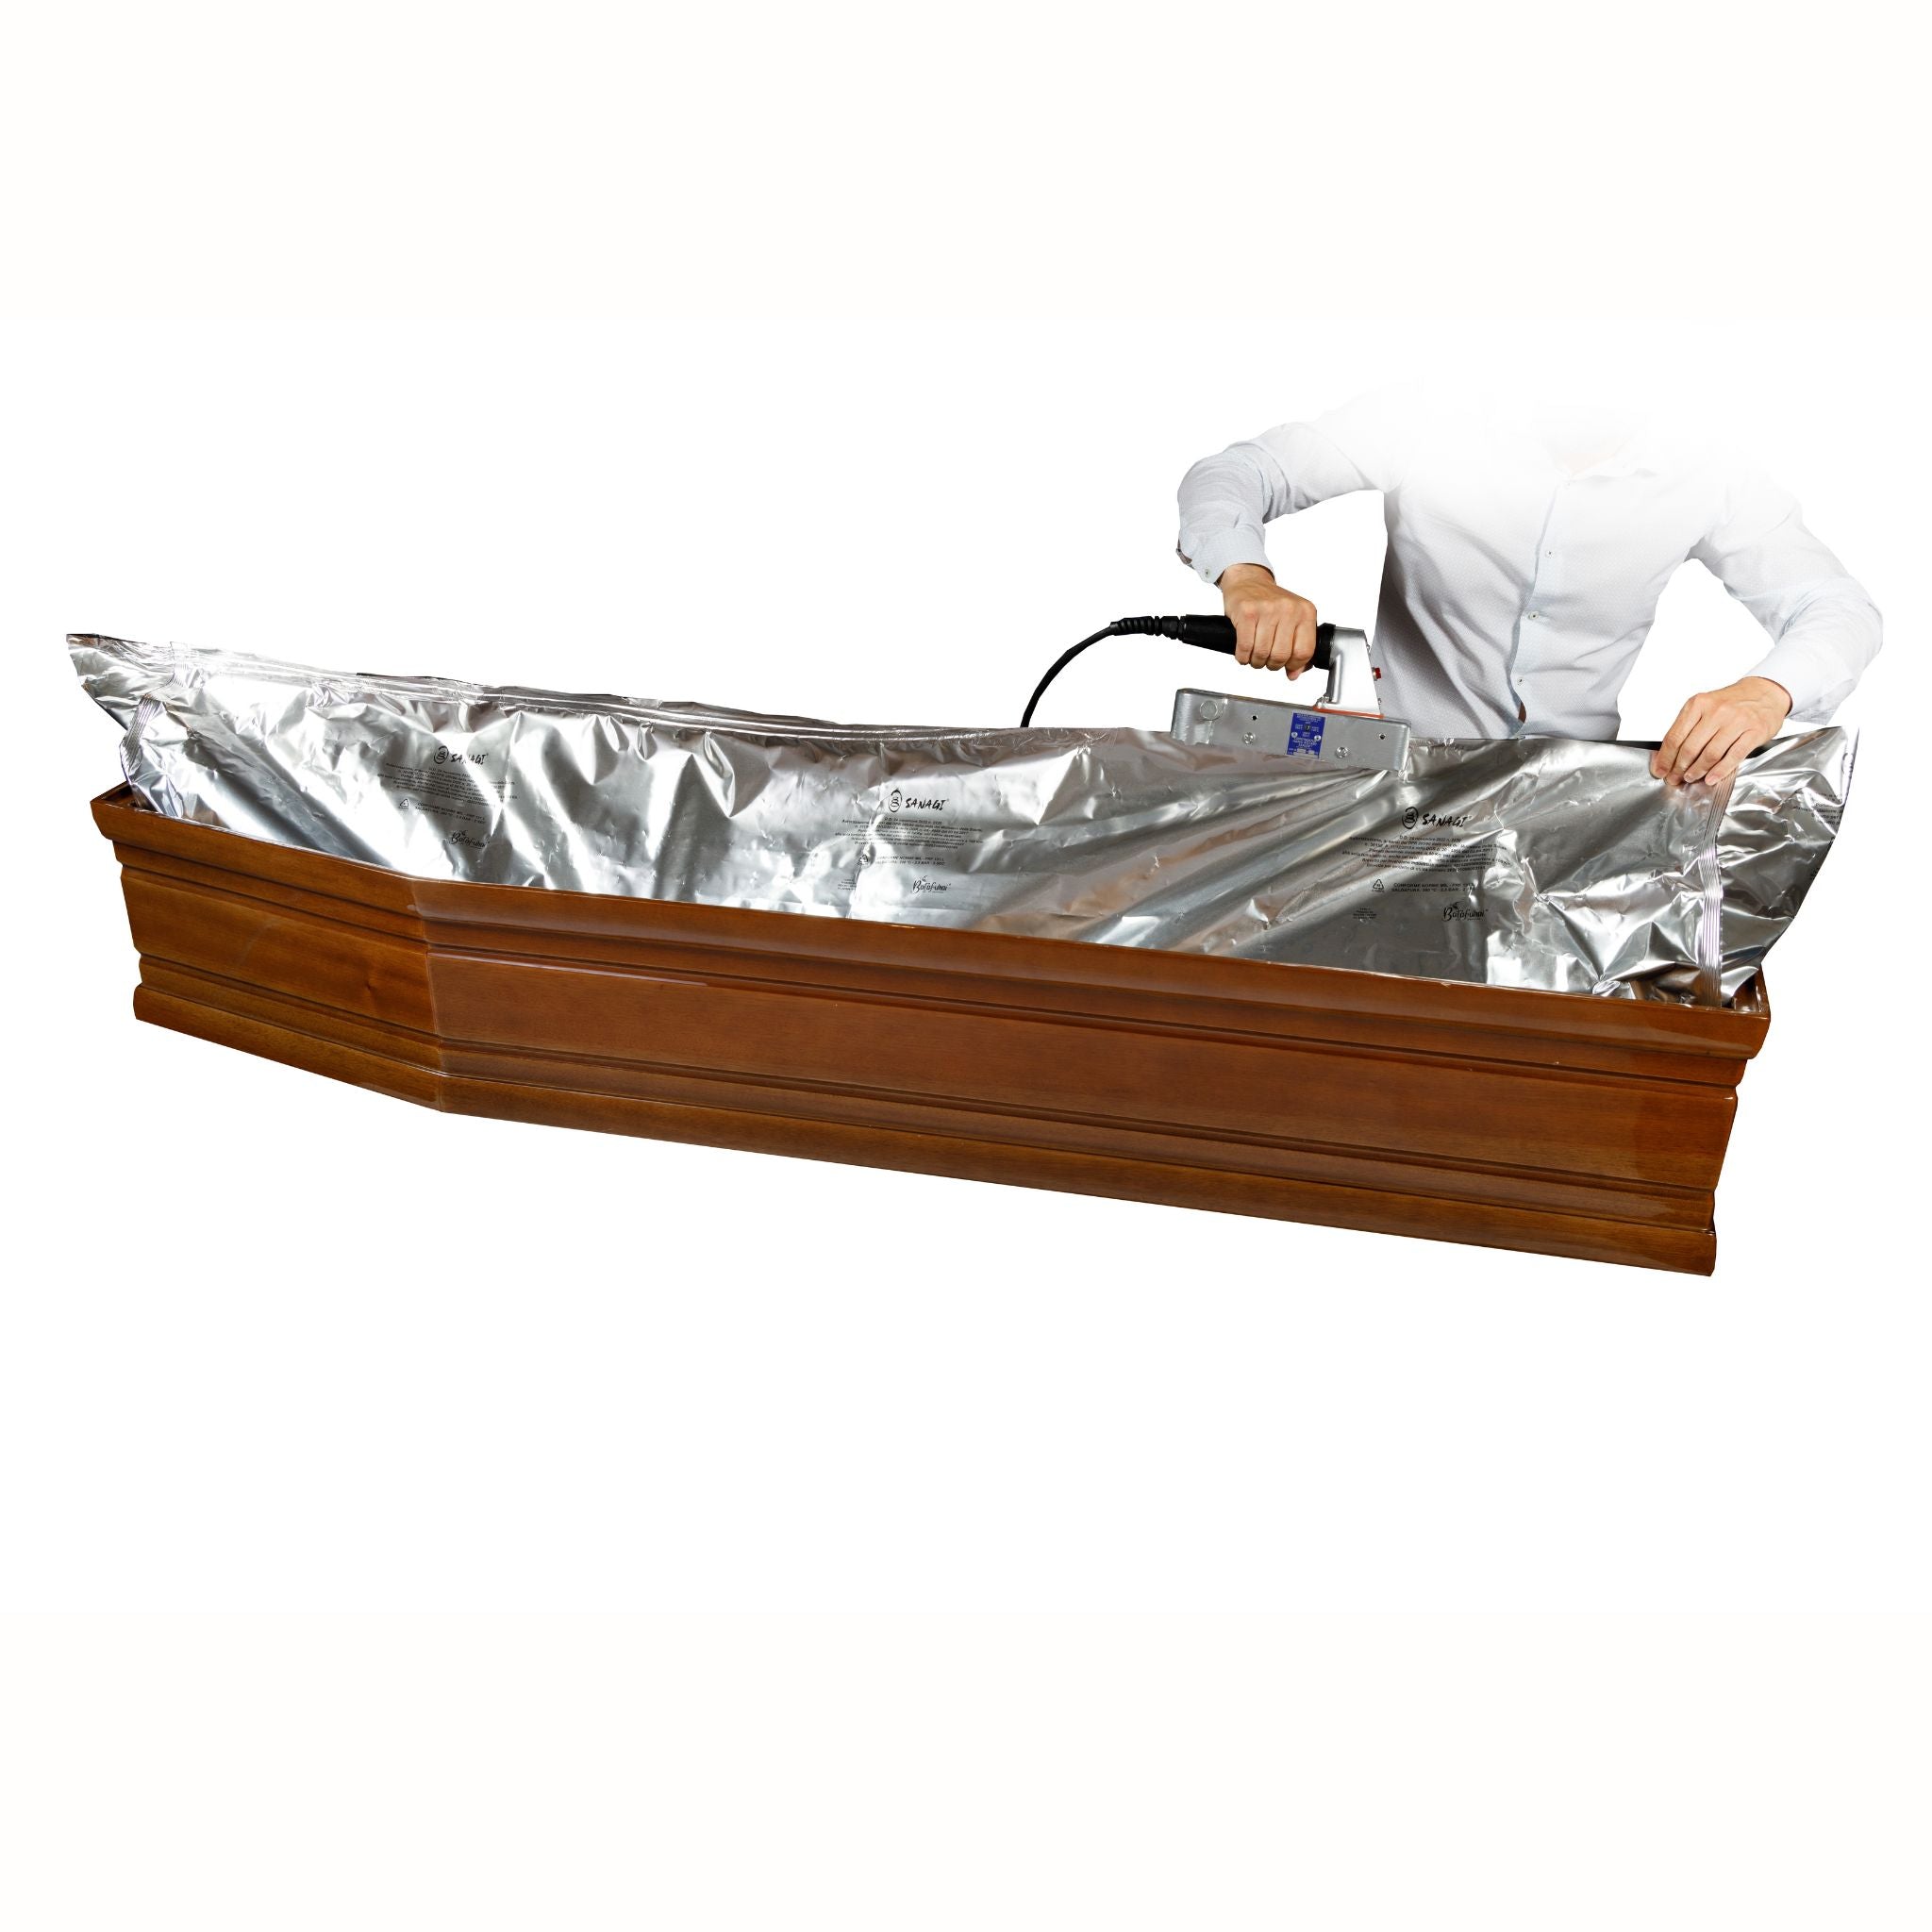 Ceabis foil coffin Sanagi